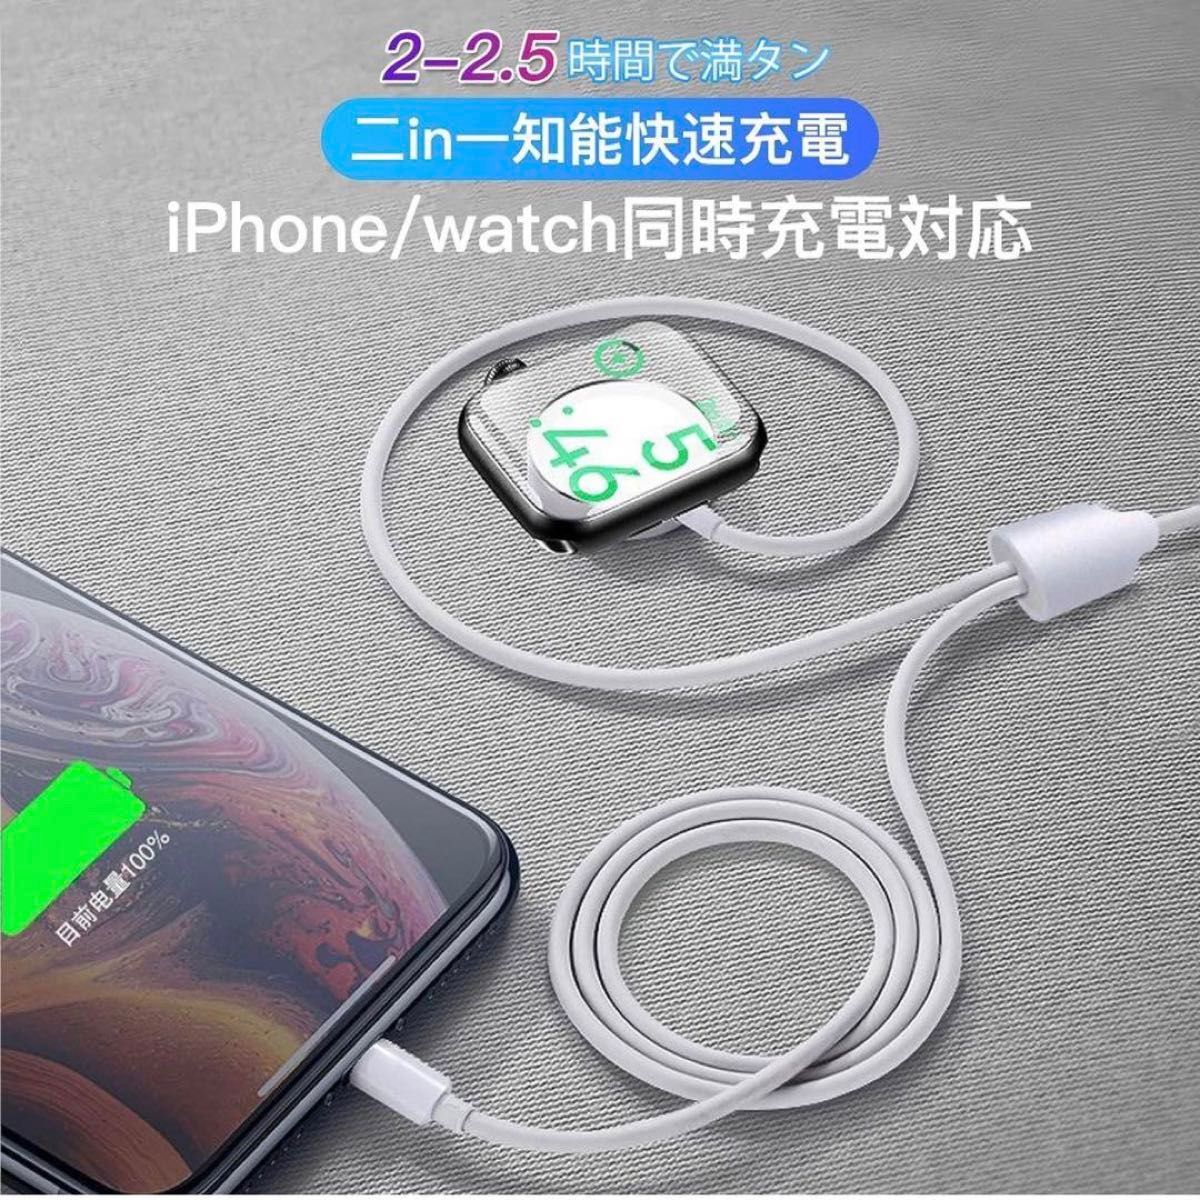 2in1 Apple watch アップルウォッチ充電器 マグネットケーブル ホワイト 